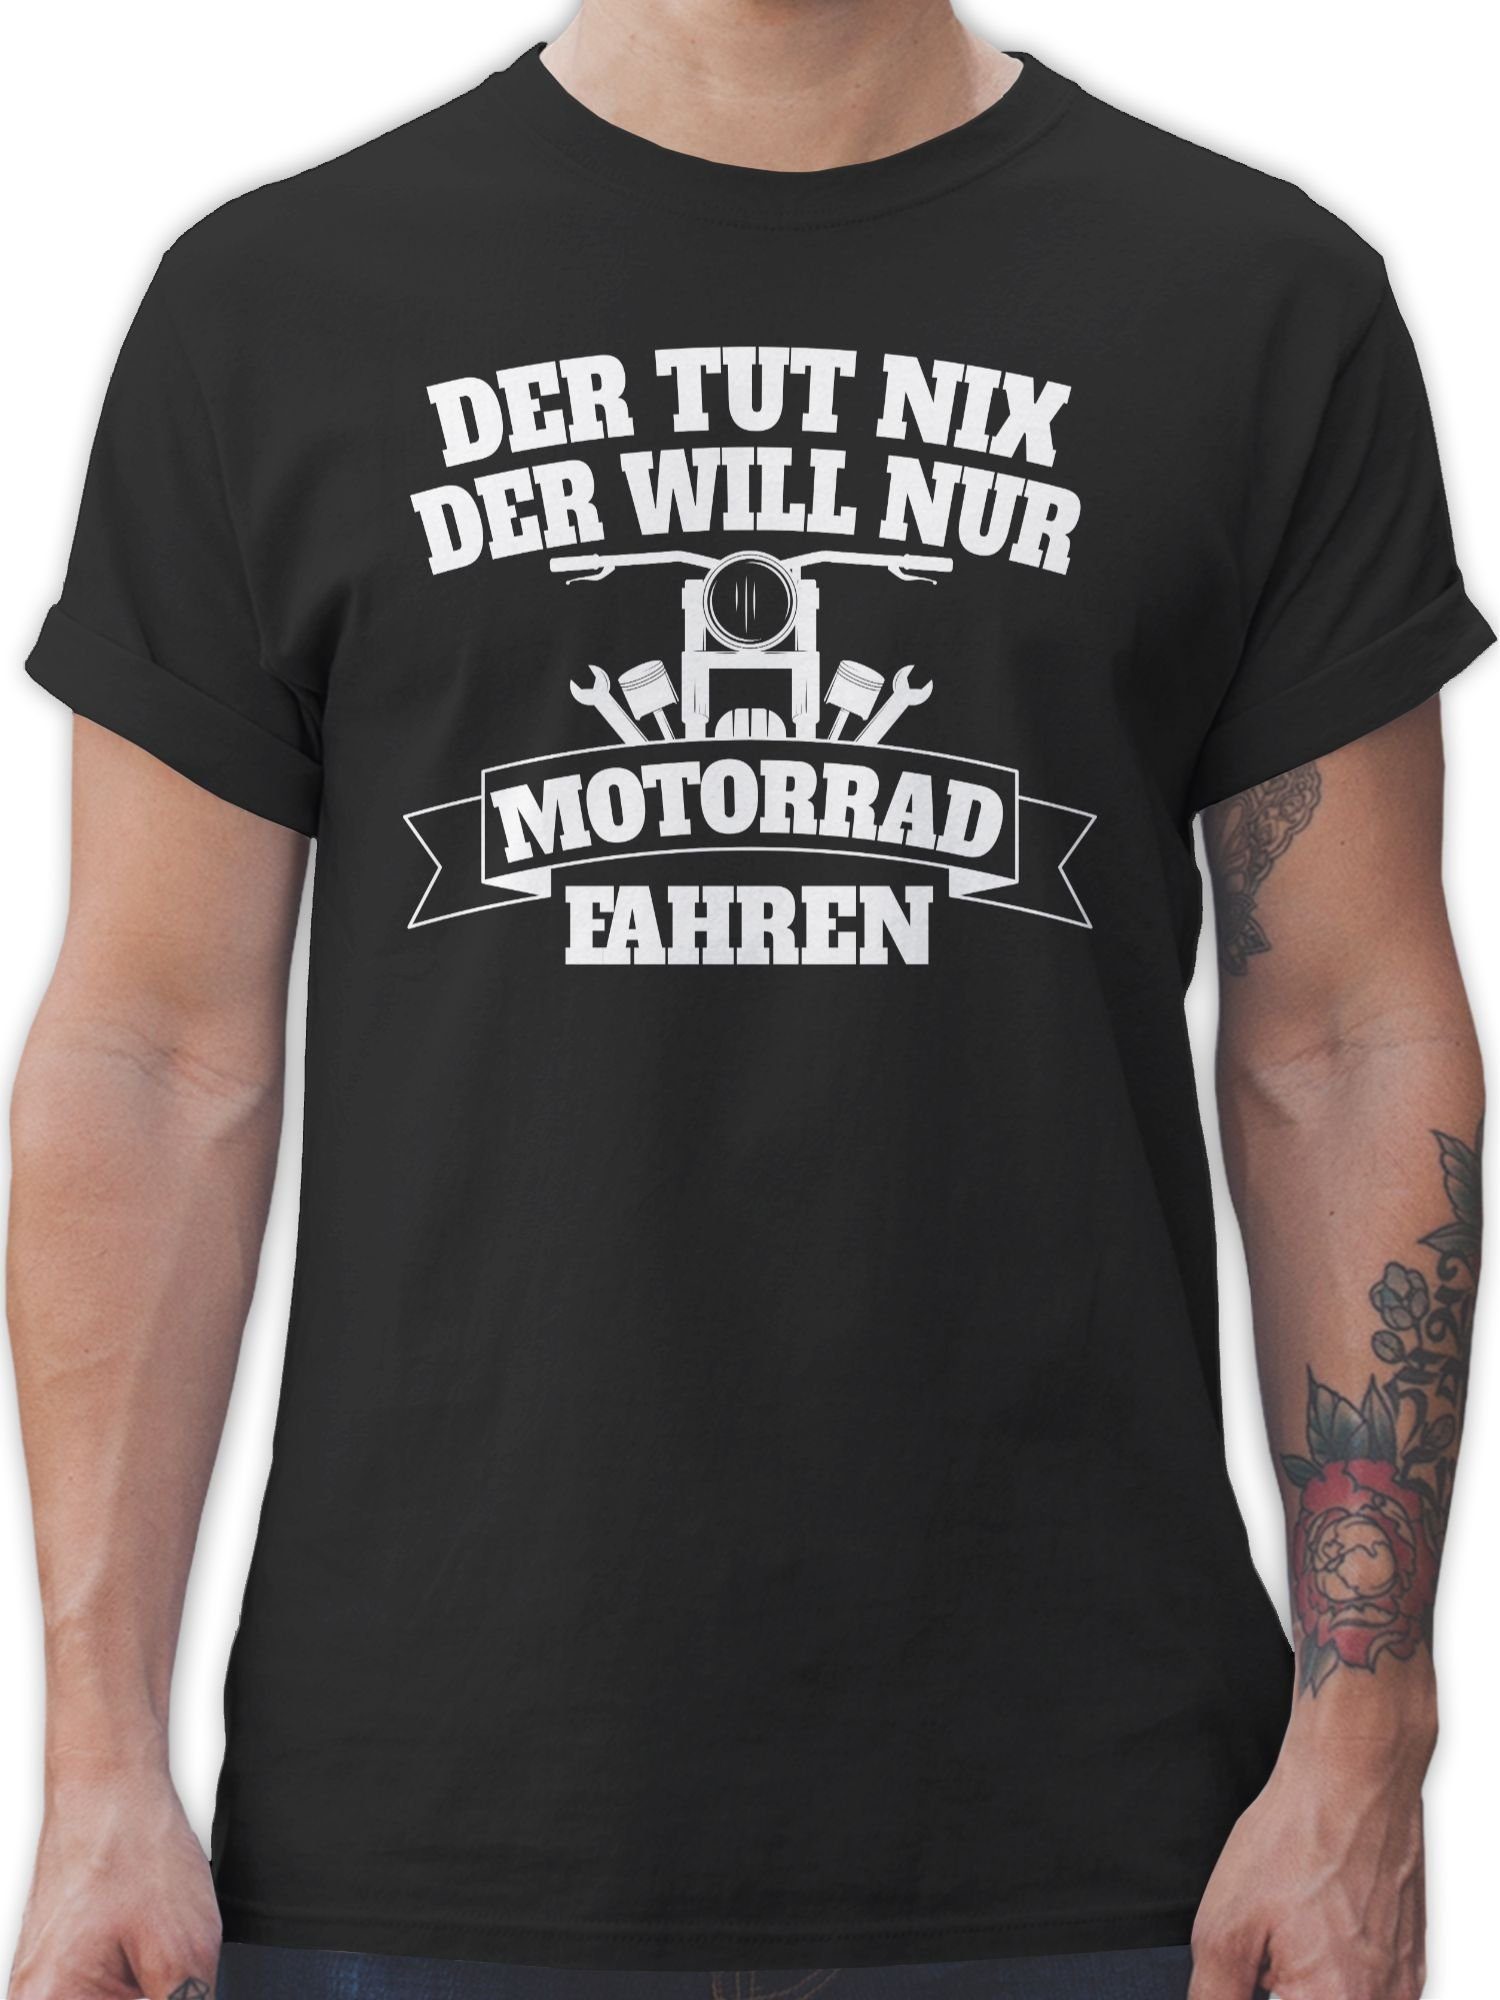 Shirtracer T-Shirt Der tut Biker Motorrad Schwarz nix fahren will nur der Motorrad 1